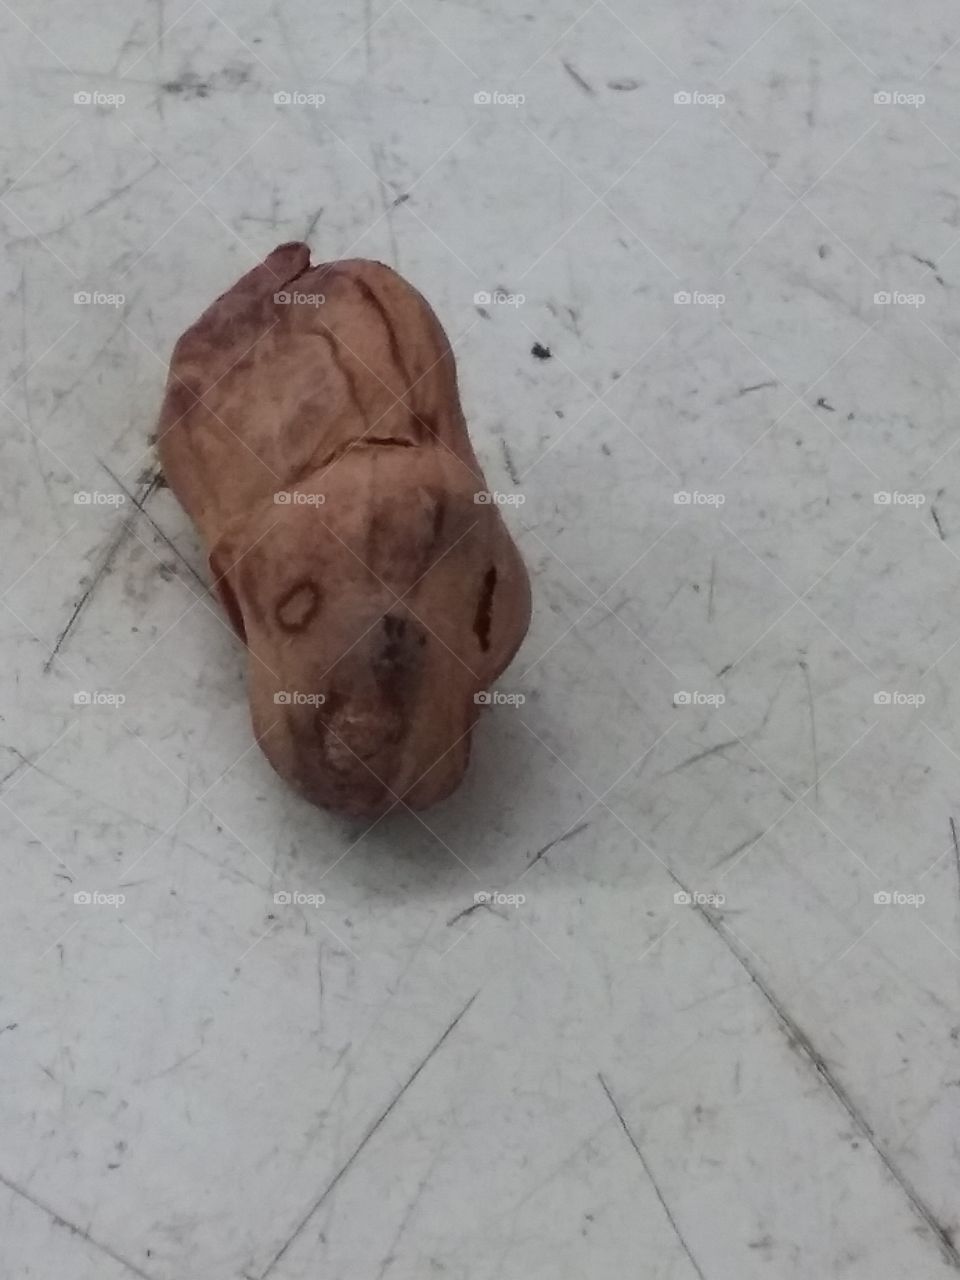 Dog faced peanut!